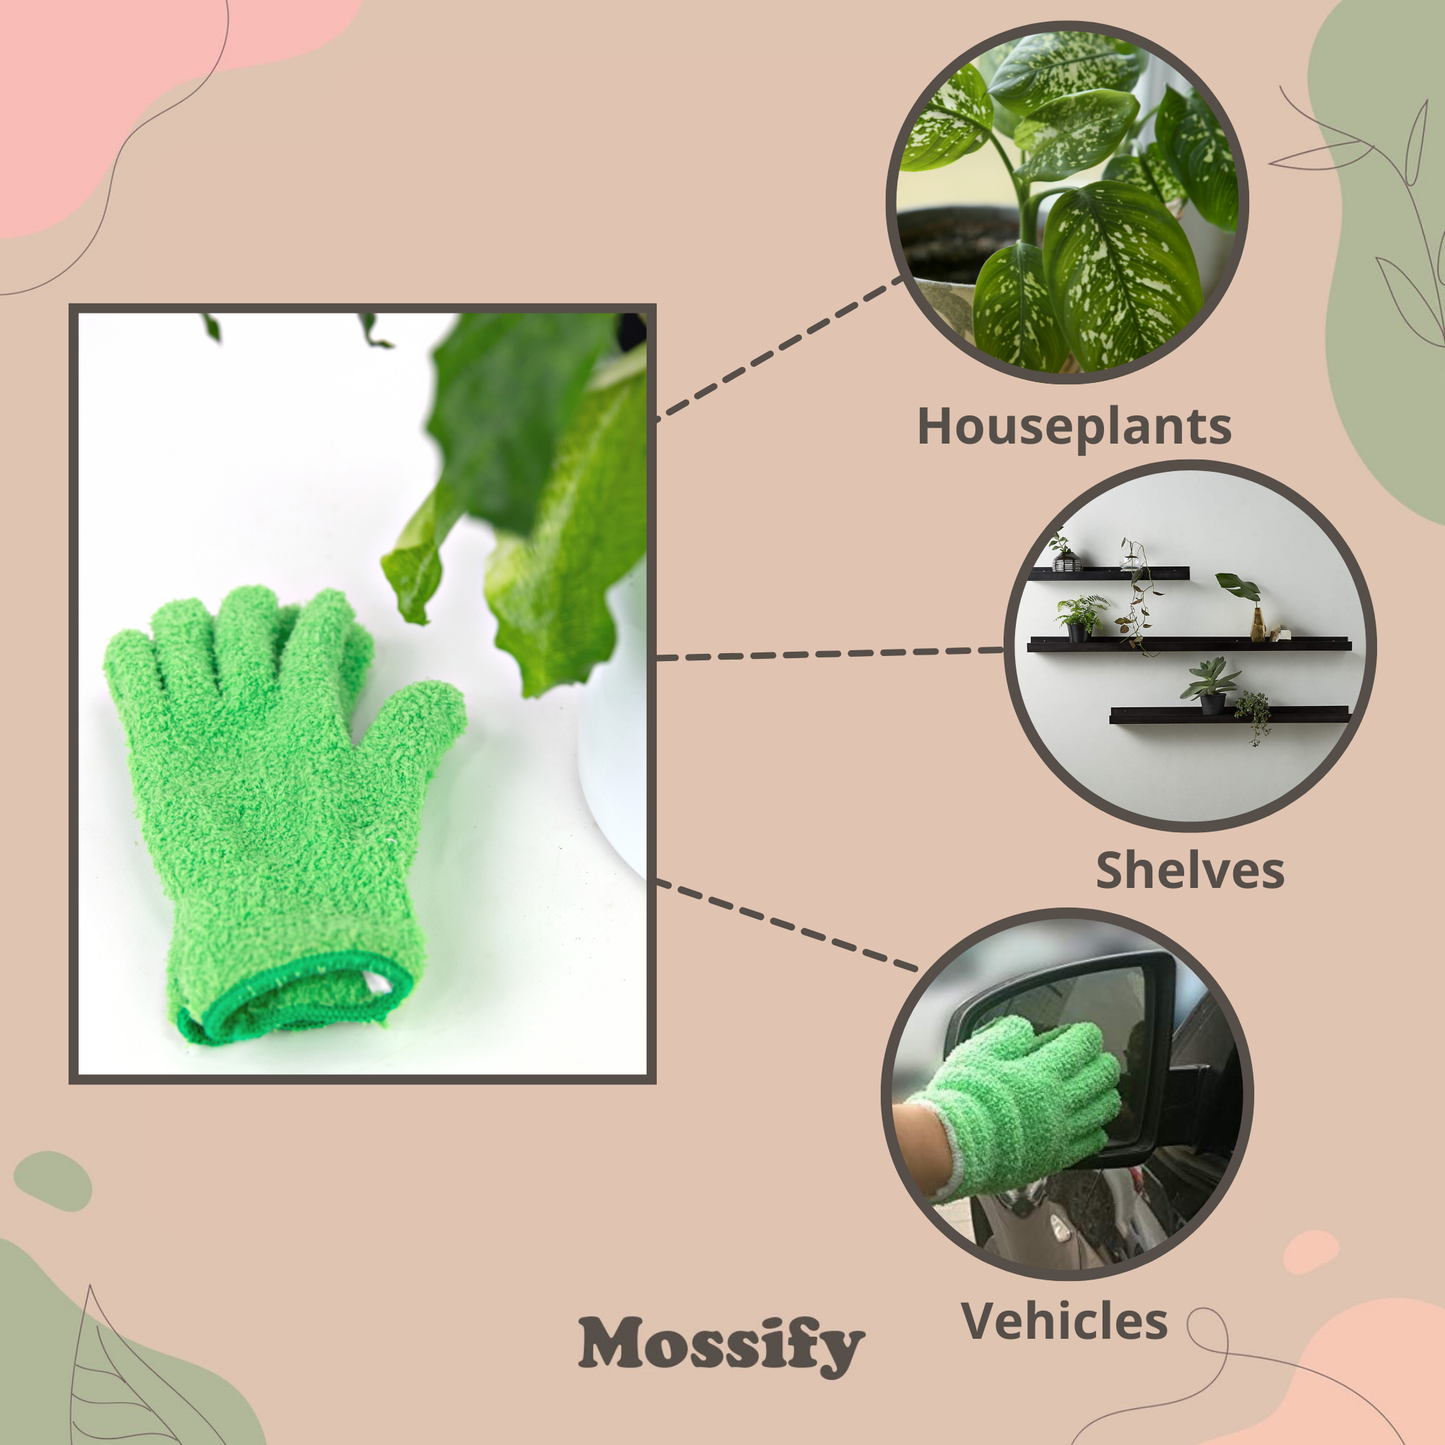 2 Microfiber Gloves - Leaf-Shining Gloves: Green